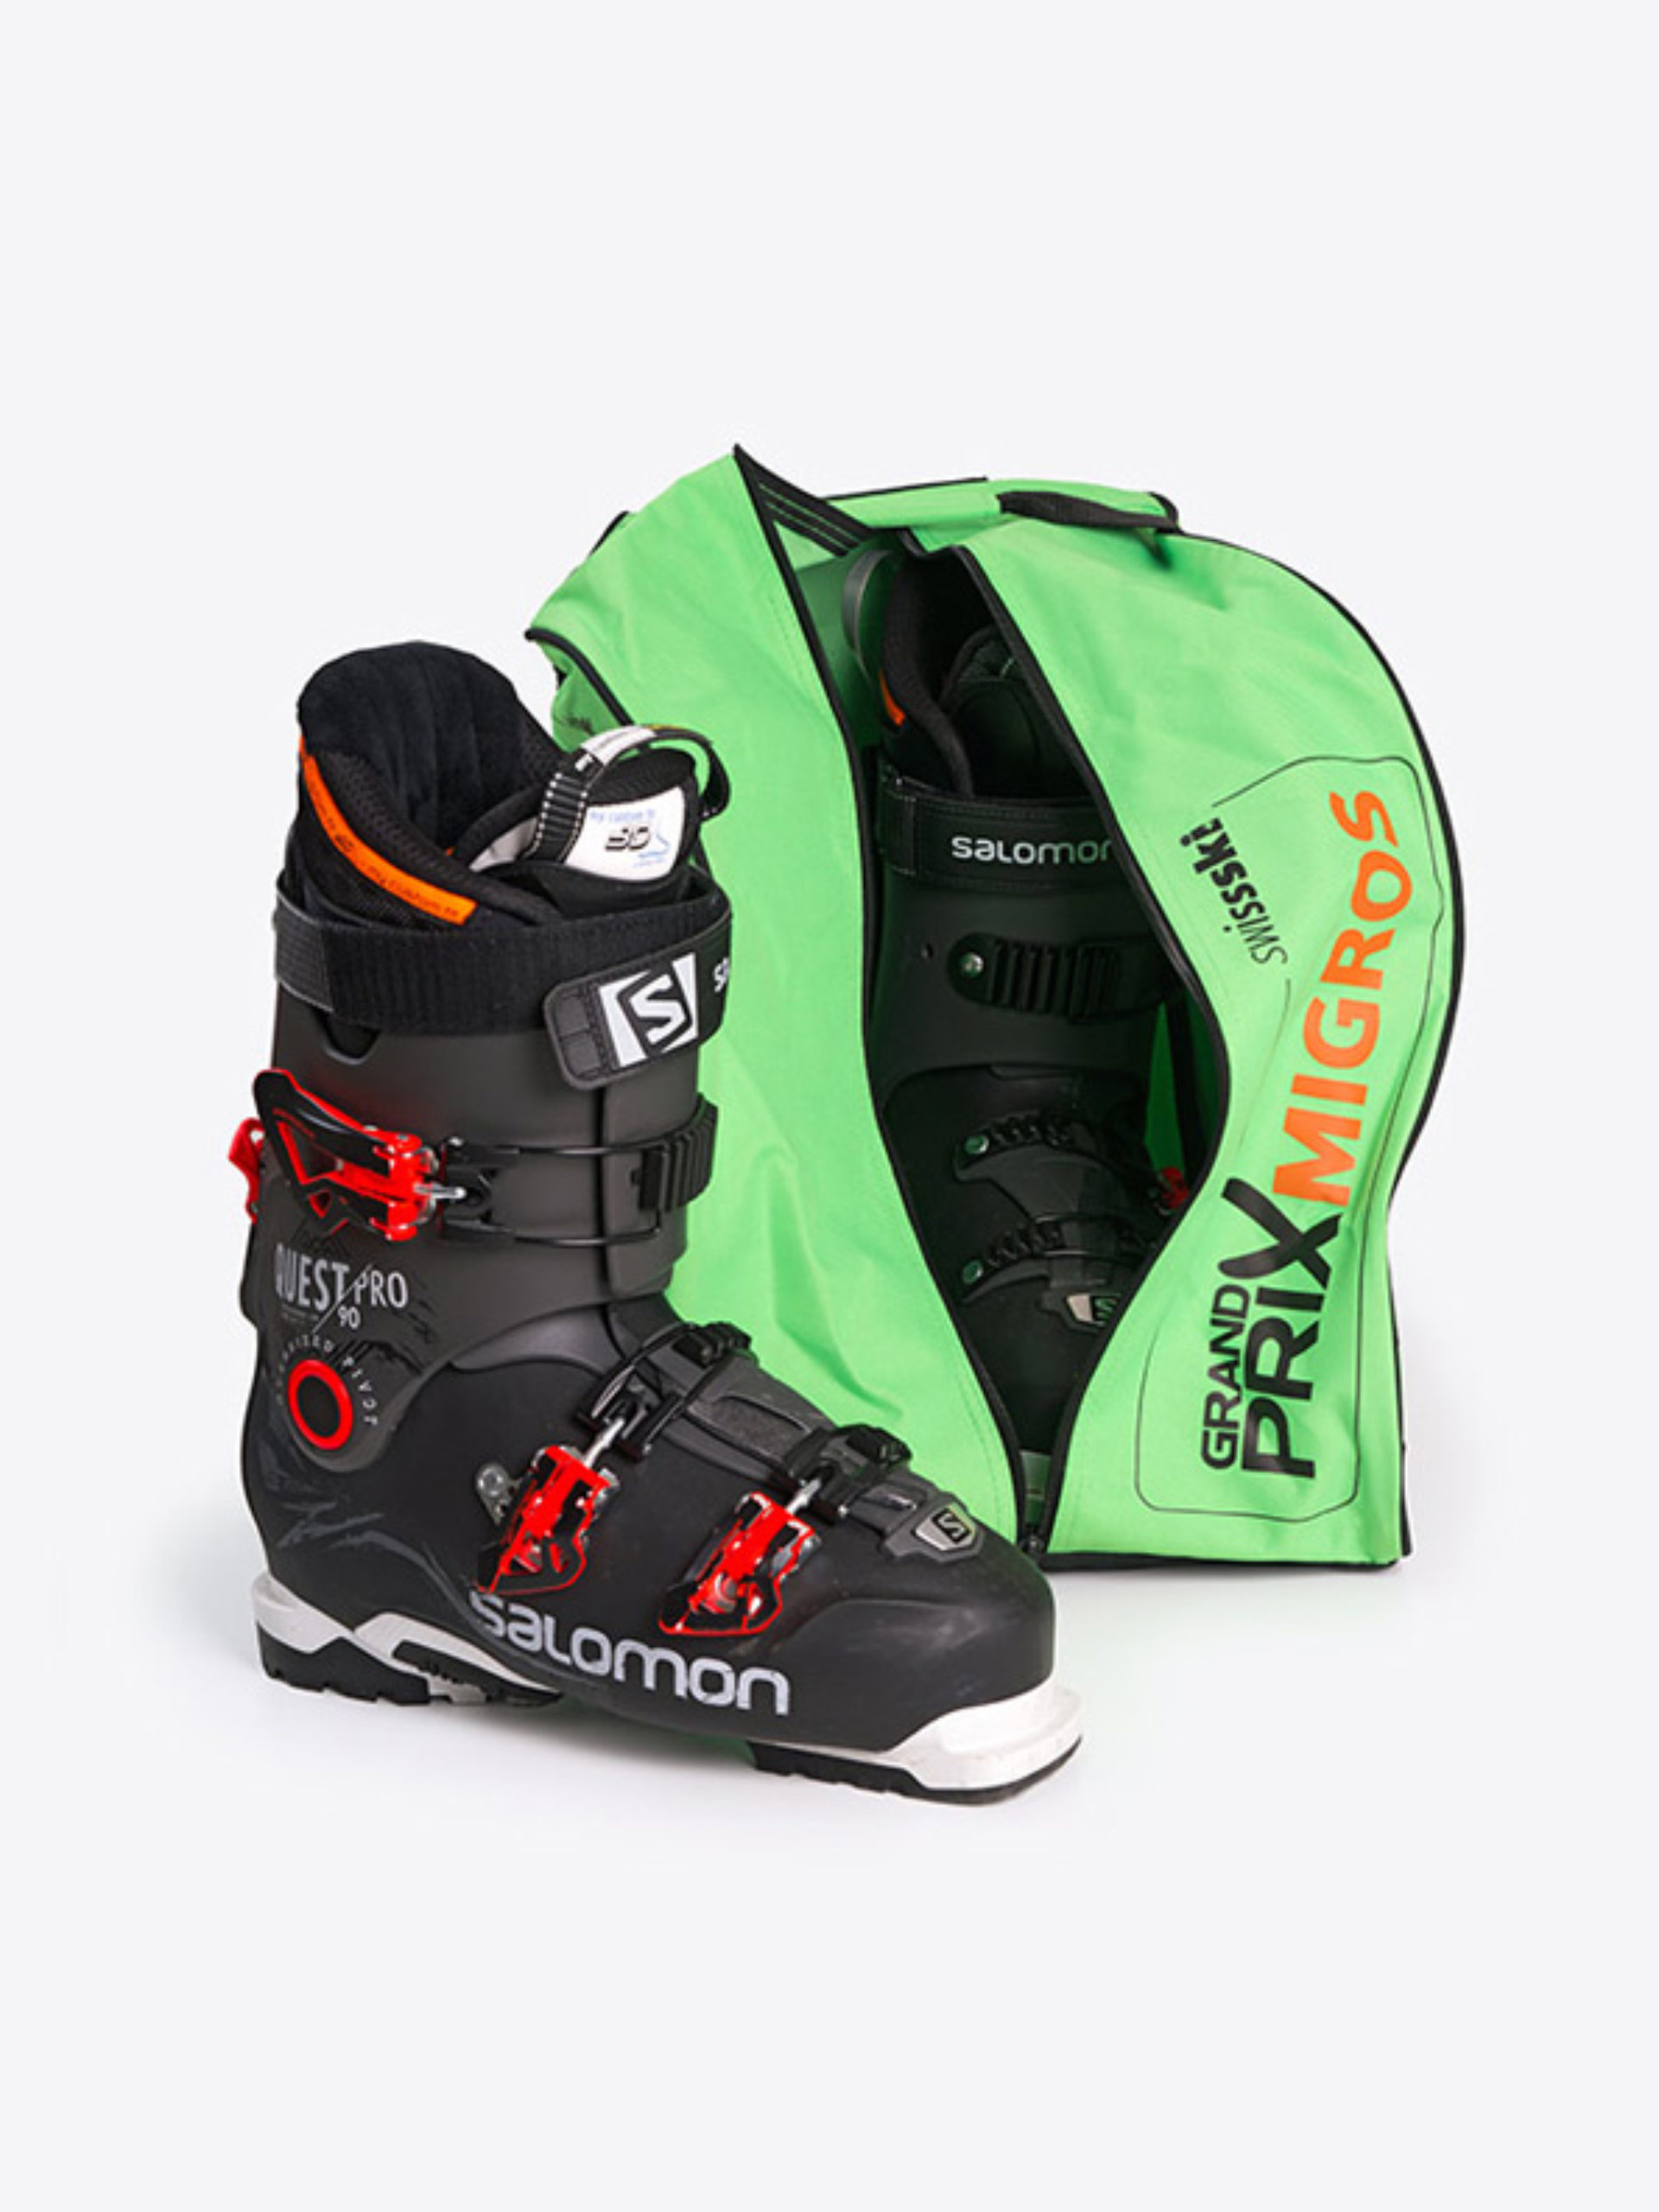 Skischuh Tasche Mit Logo Bedrucken